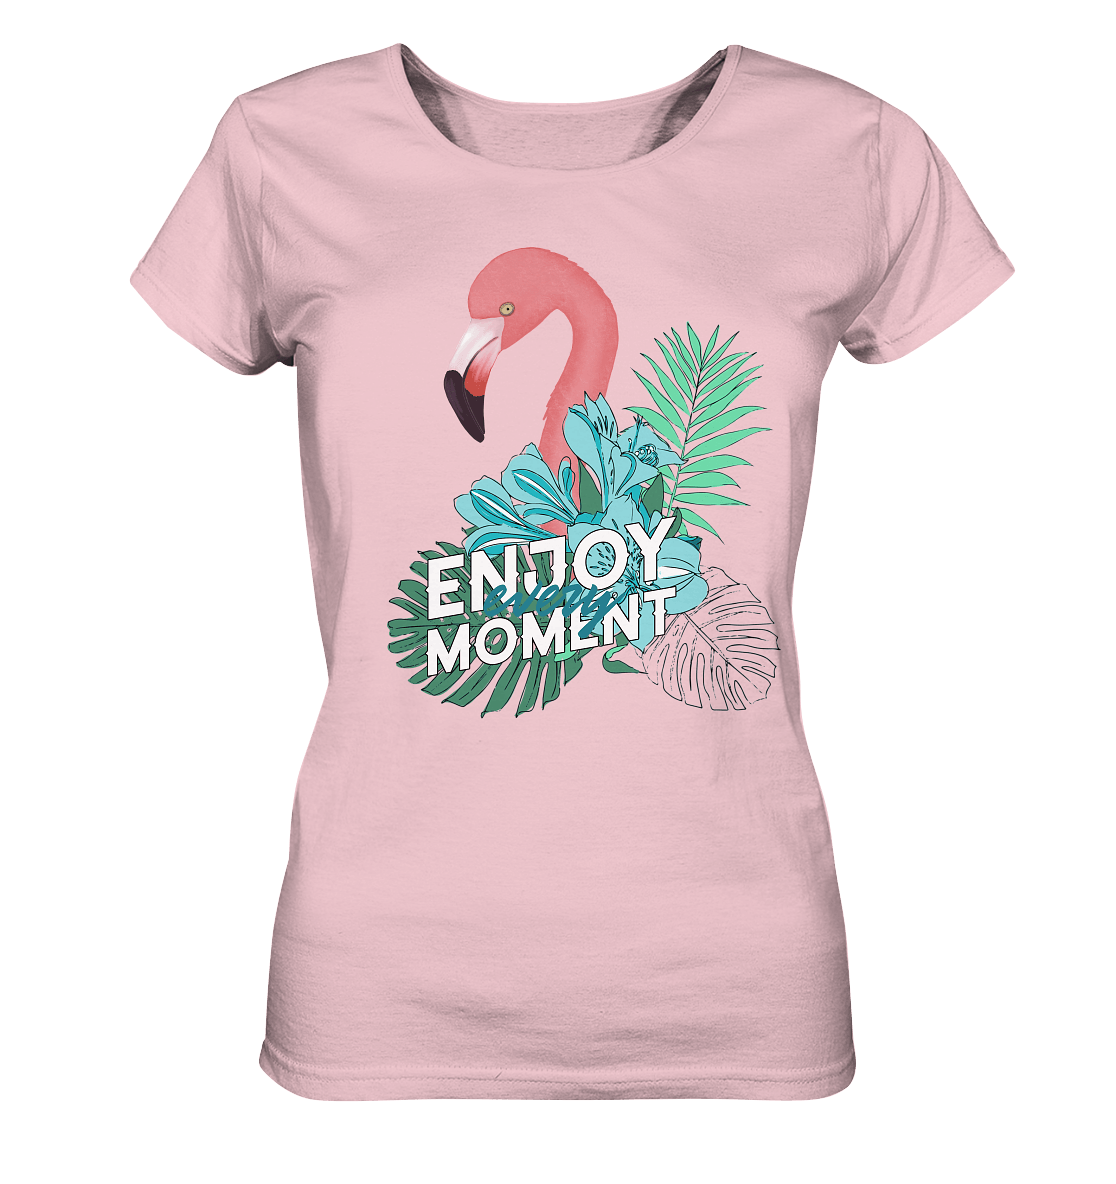 Damen T-Shirt mit trendigem handgezeichneten Flamingo Design und Beschriftung "Enjoy every moment."  Botanic Motive on T-Shirt